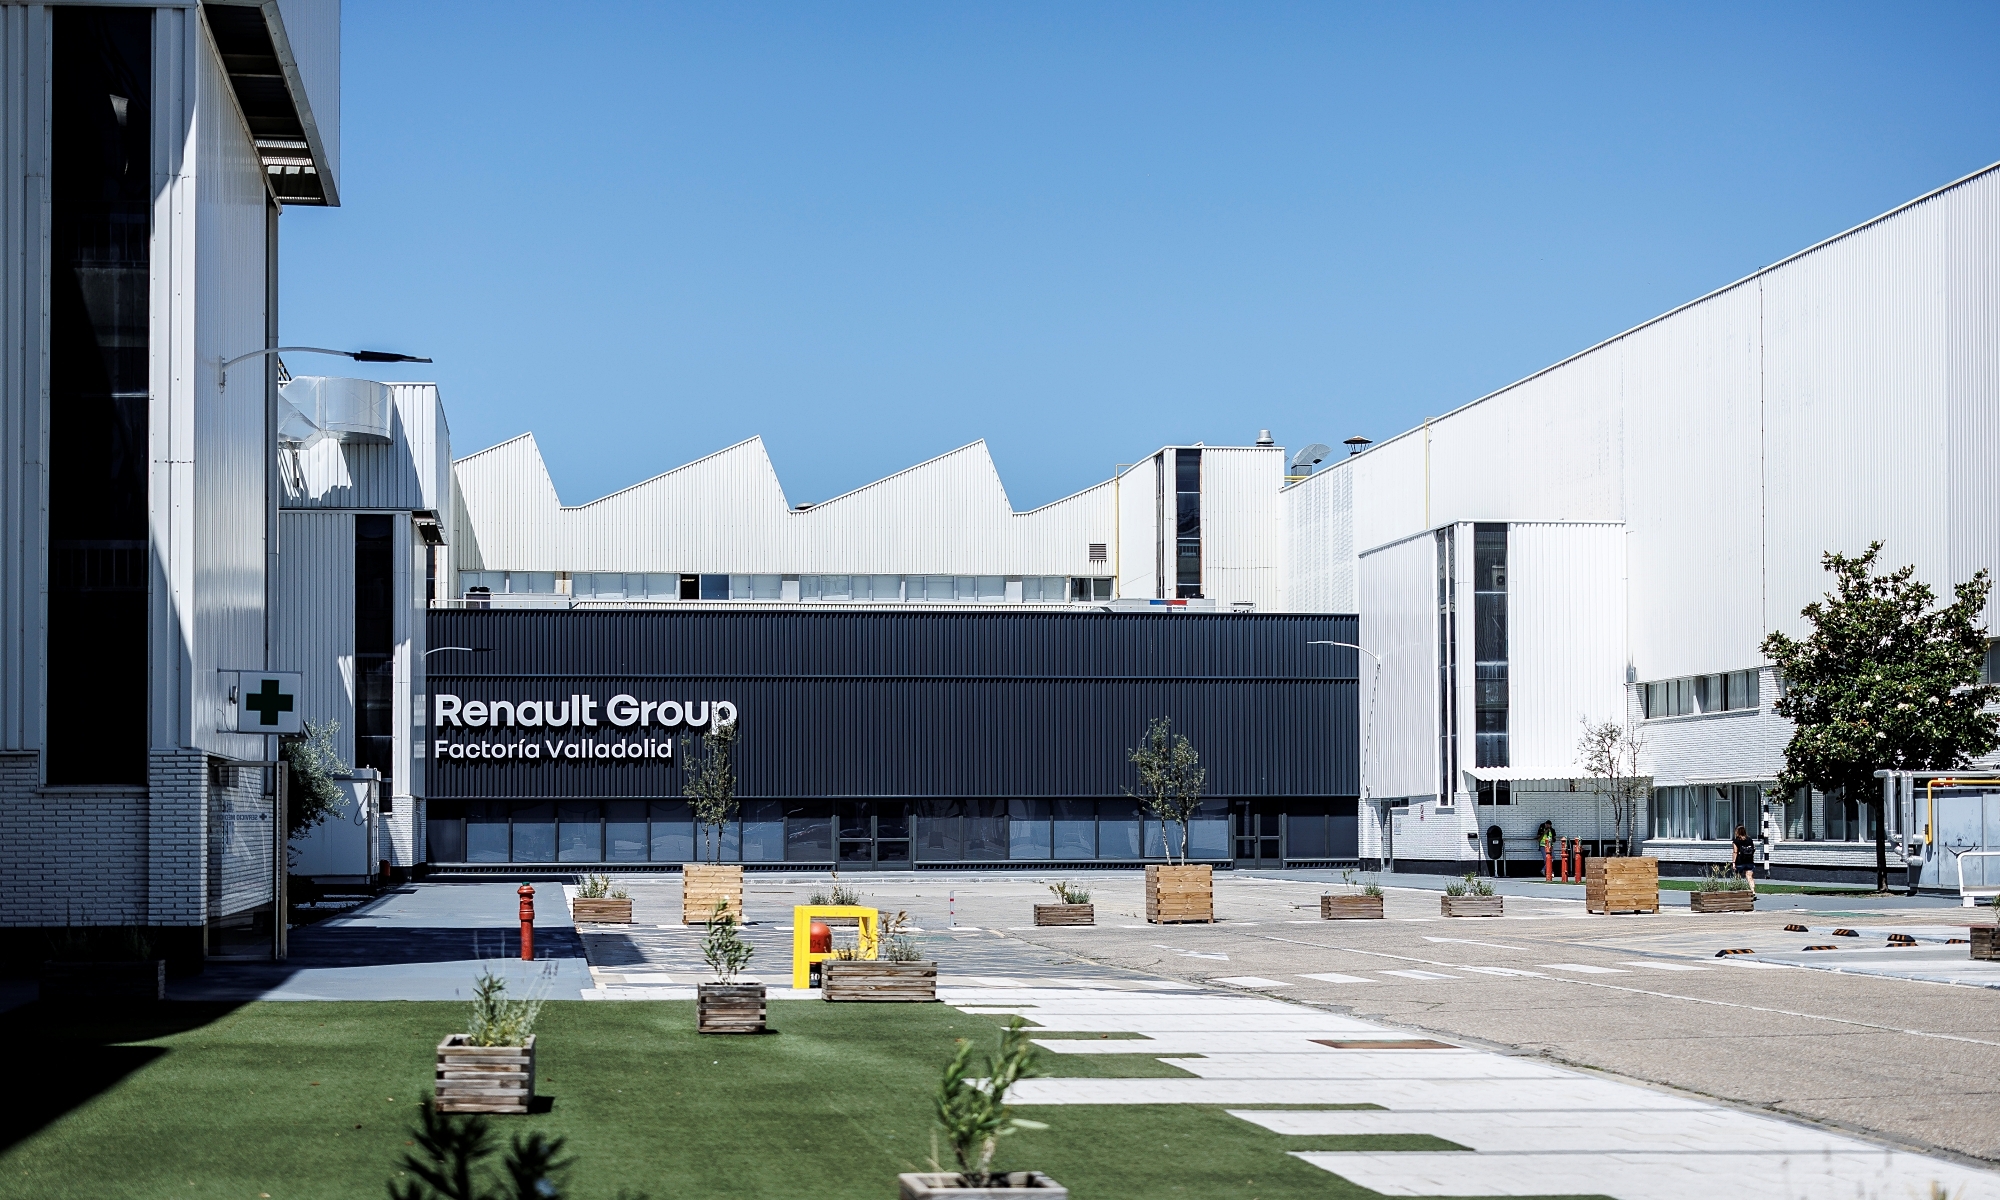 La Factoría de Renault en Valladolid es una de las más importantes y con más solera en España.